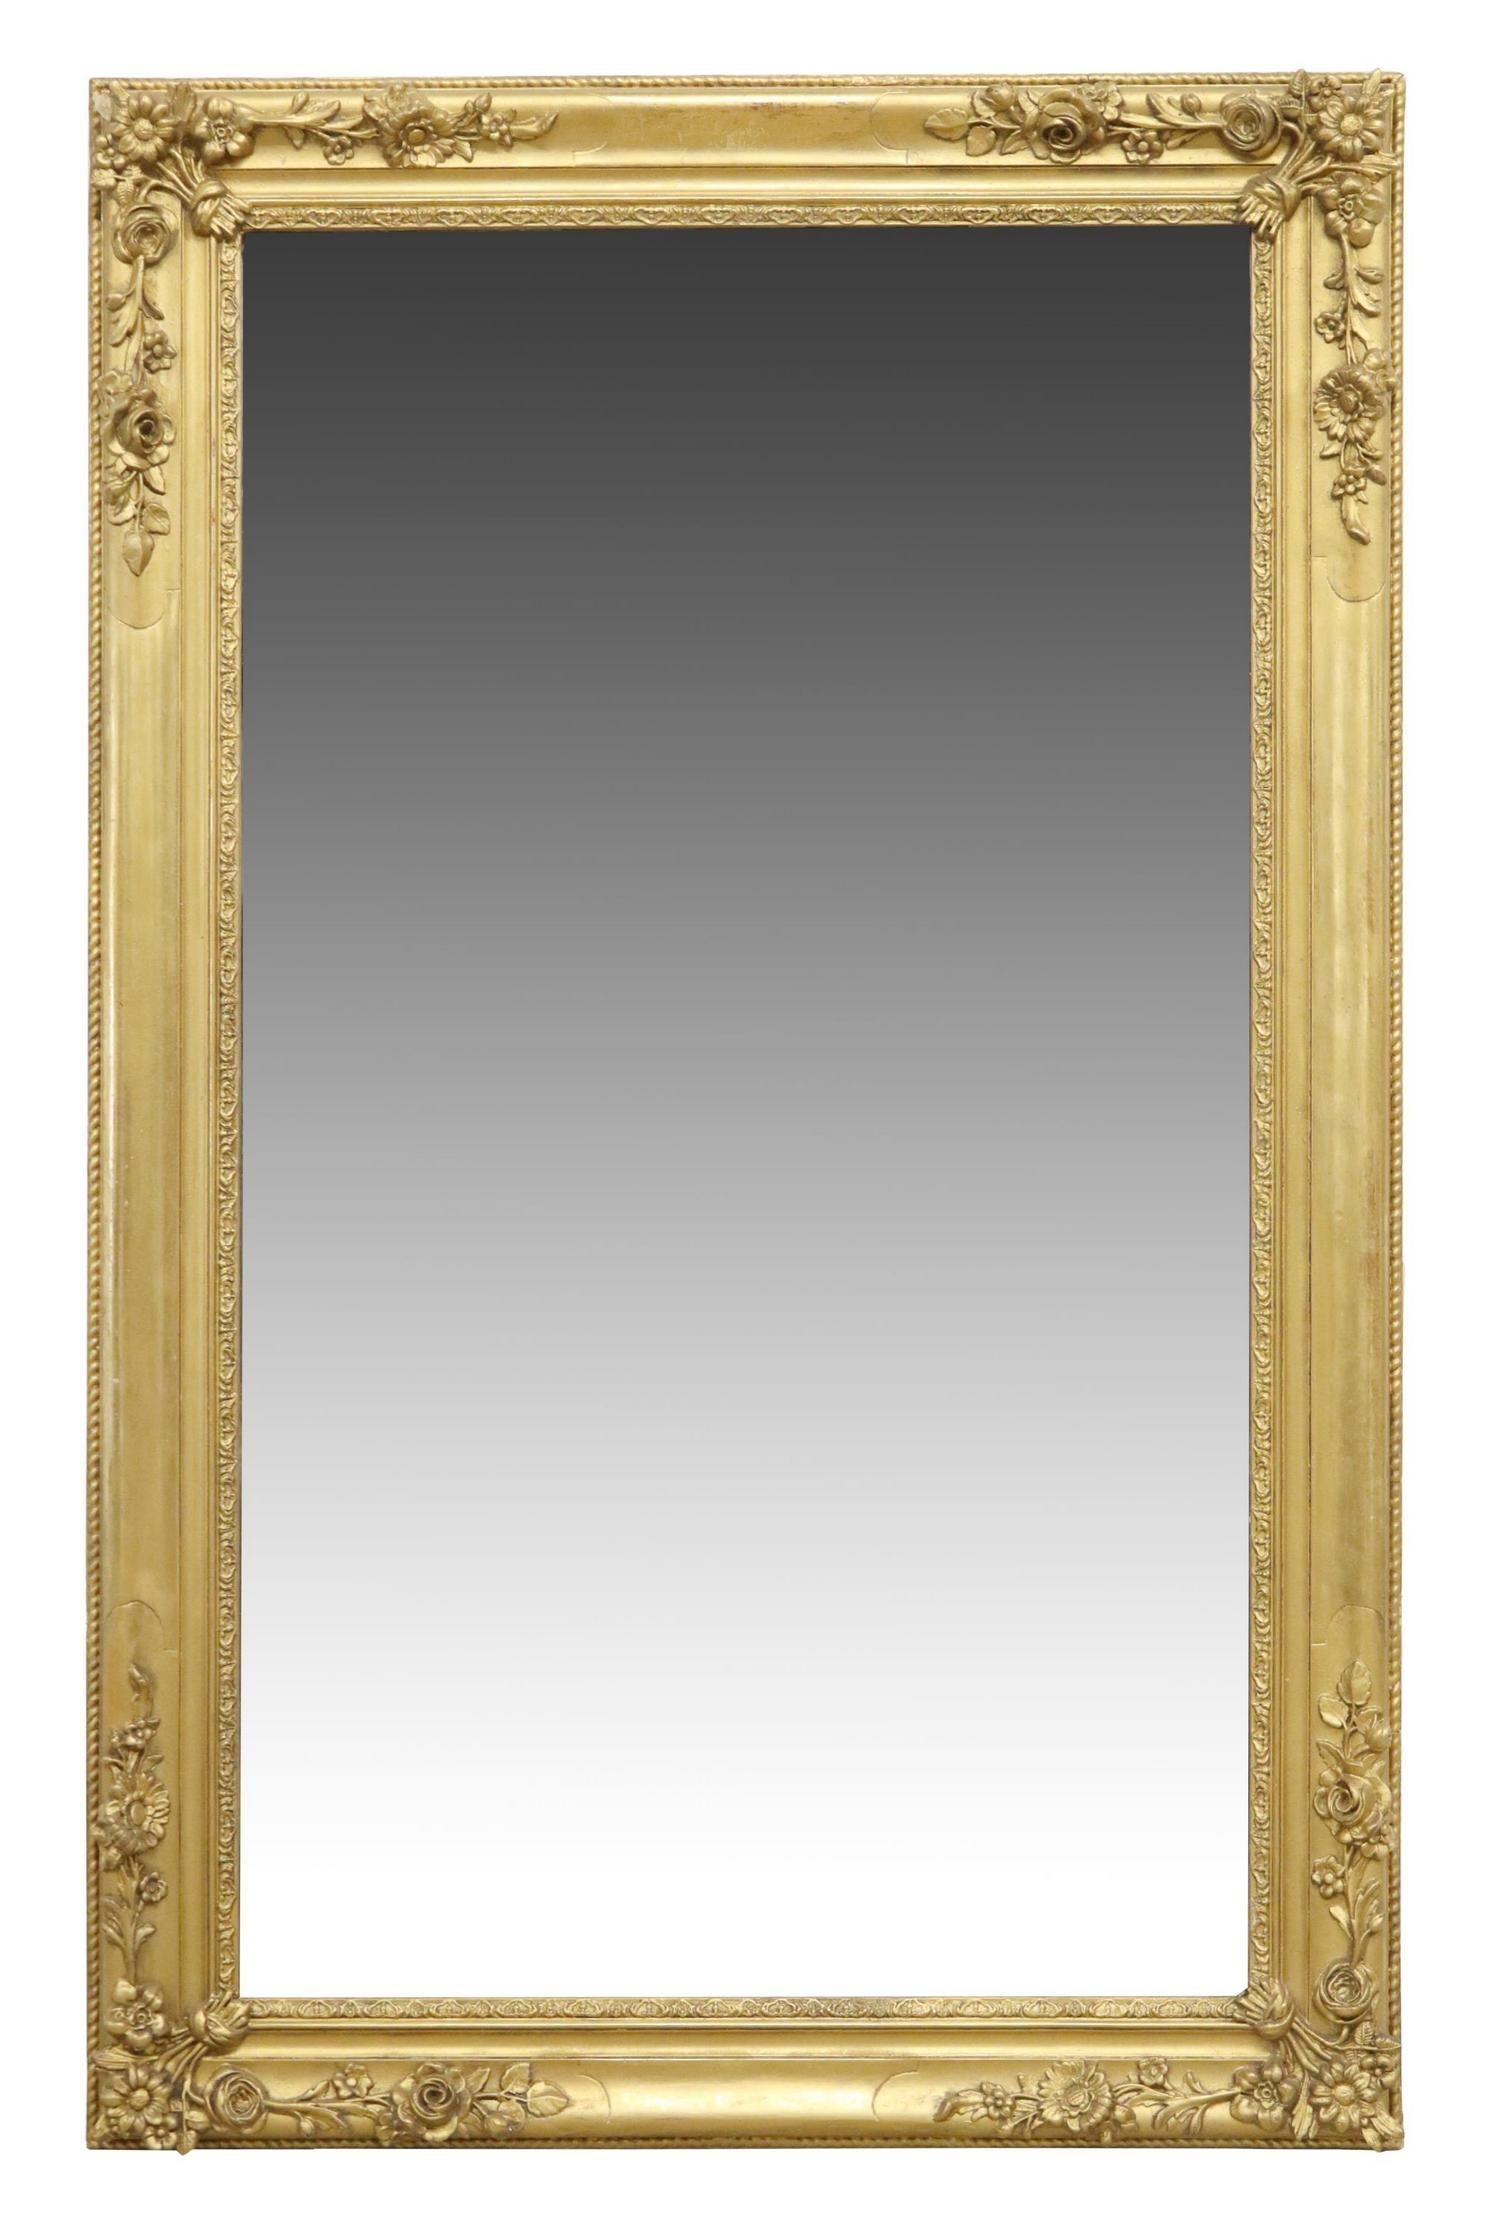 Miroir ancien de style Louis XV en bois doré et composition, C.C. Le miroir présente un cadre rectangulaire, avec des accents floraux, entourant une plaque de miroir plate. La poussière de 